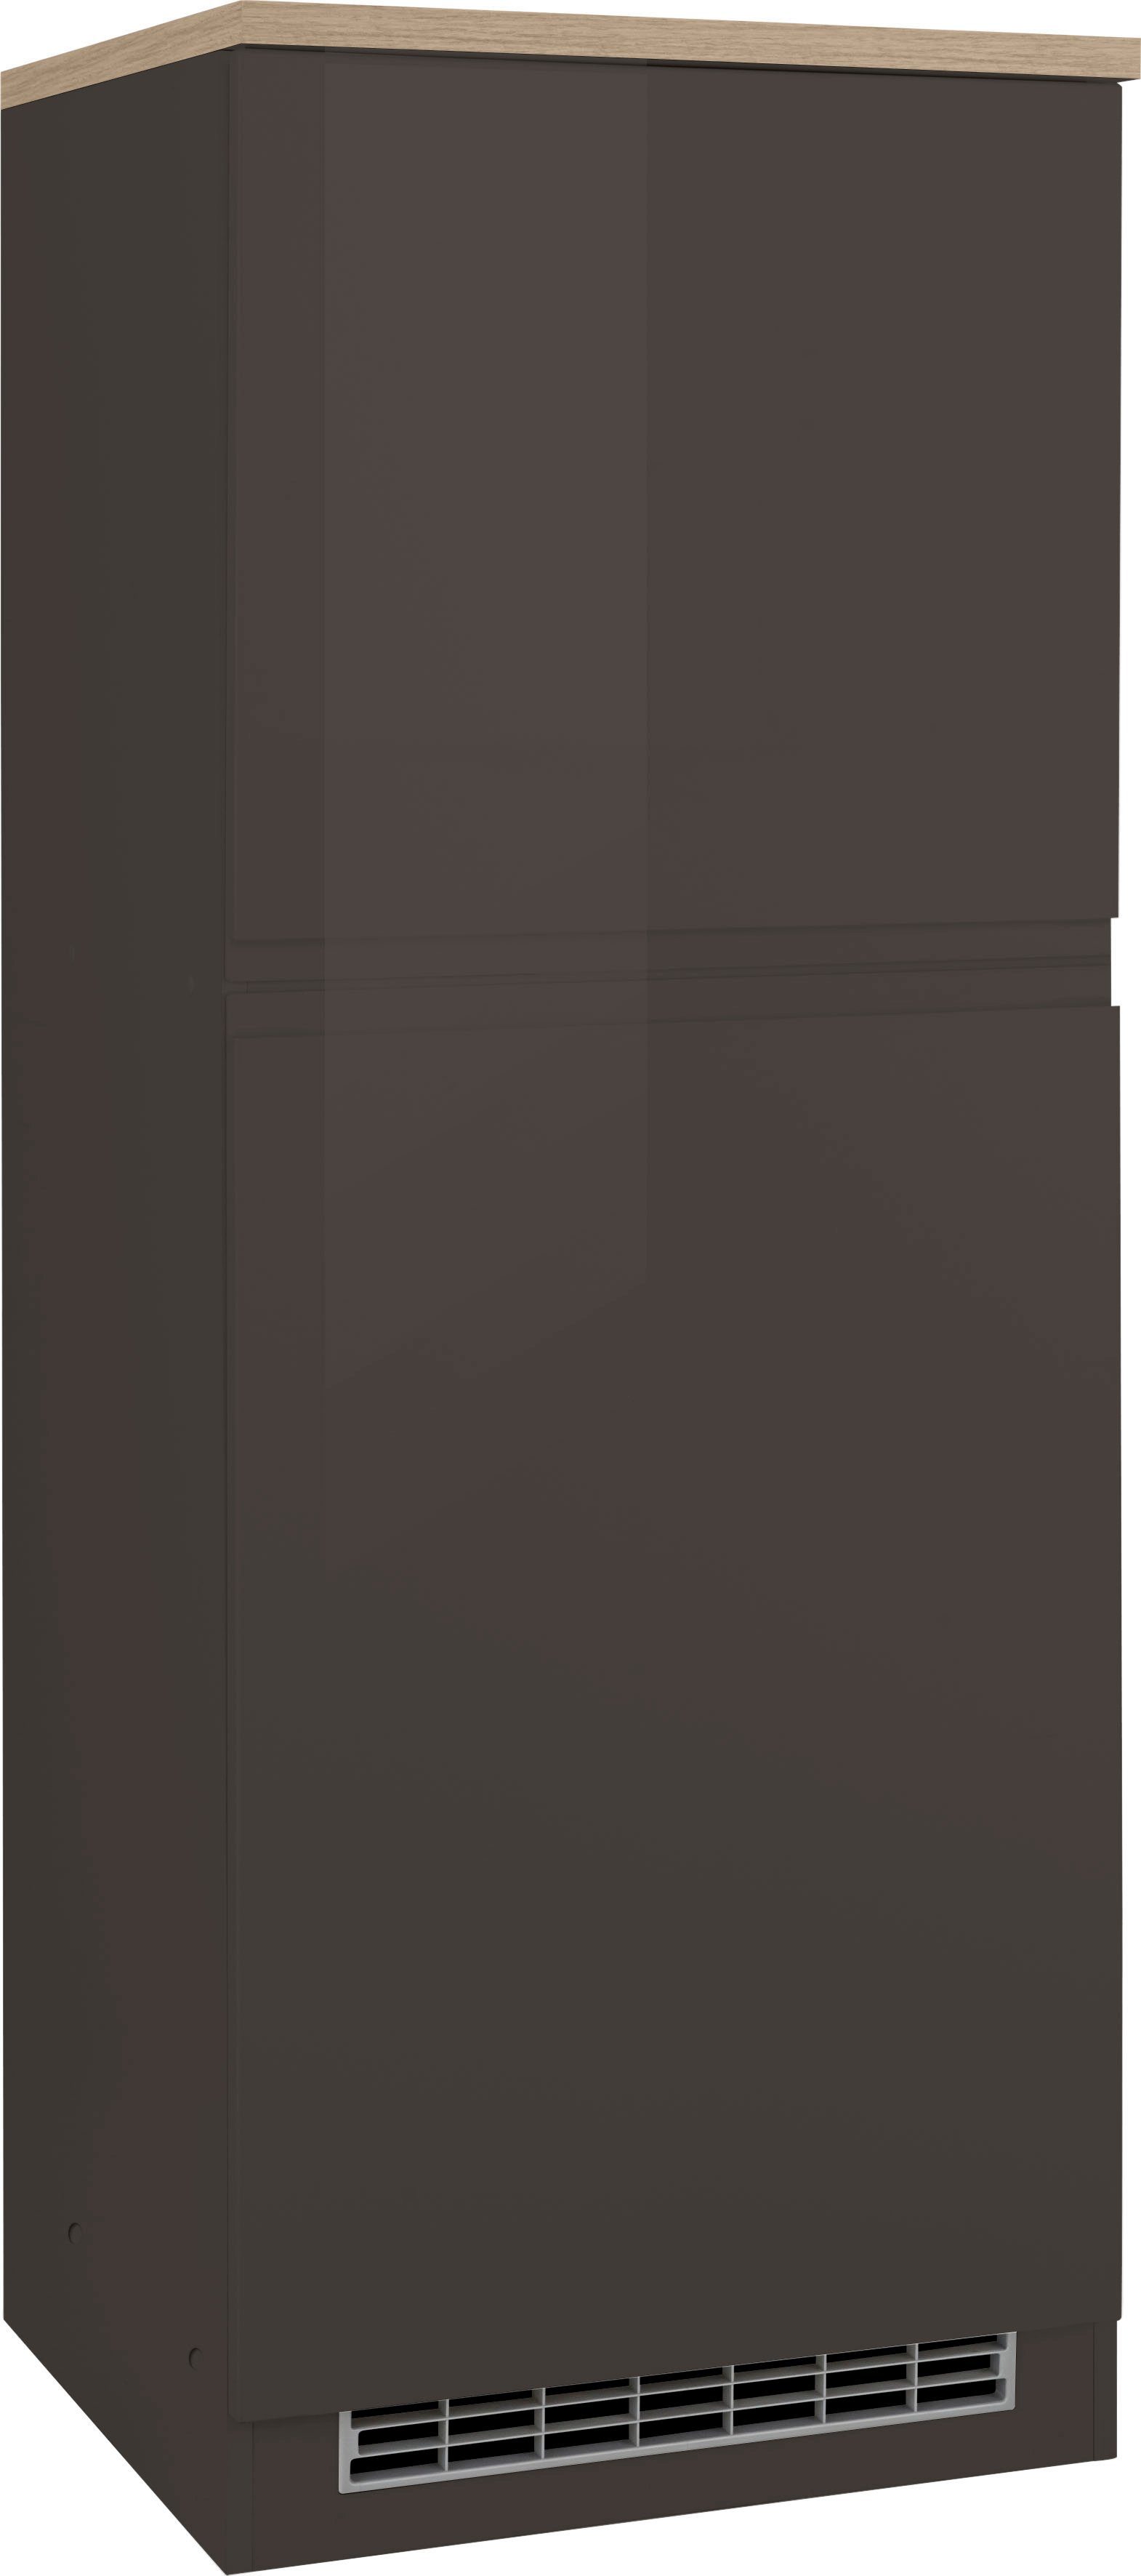 HELD MÖBEL Kühlumbauschrank Virginia 165 cm hoch, 60 cm breit, Nische für Kühlschrank: 56/88/55 cm, 2 Türen grau Hochglanz | grafit | Umbauschränke